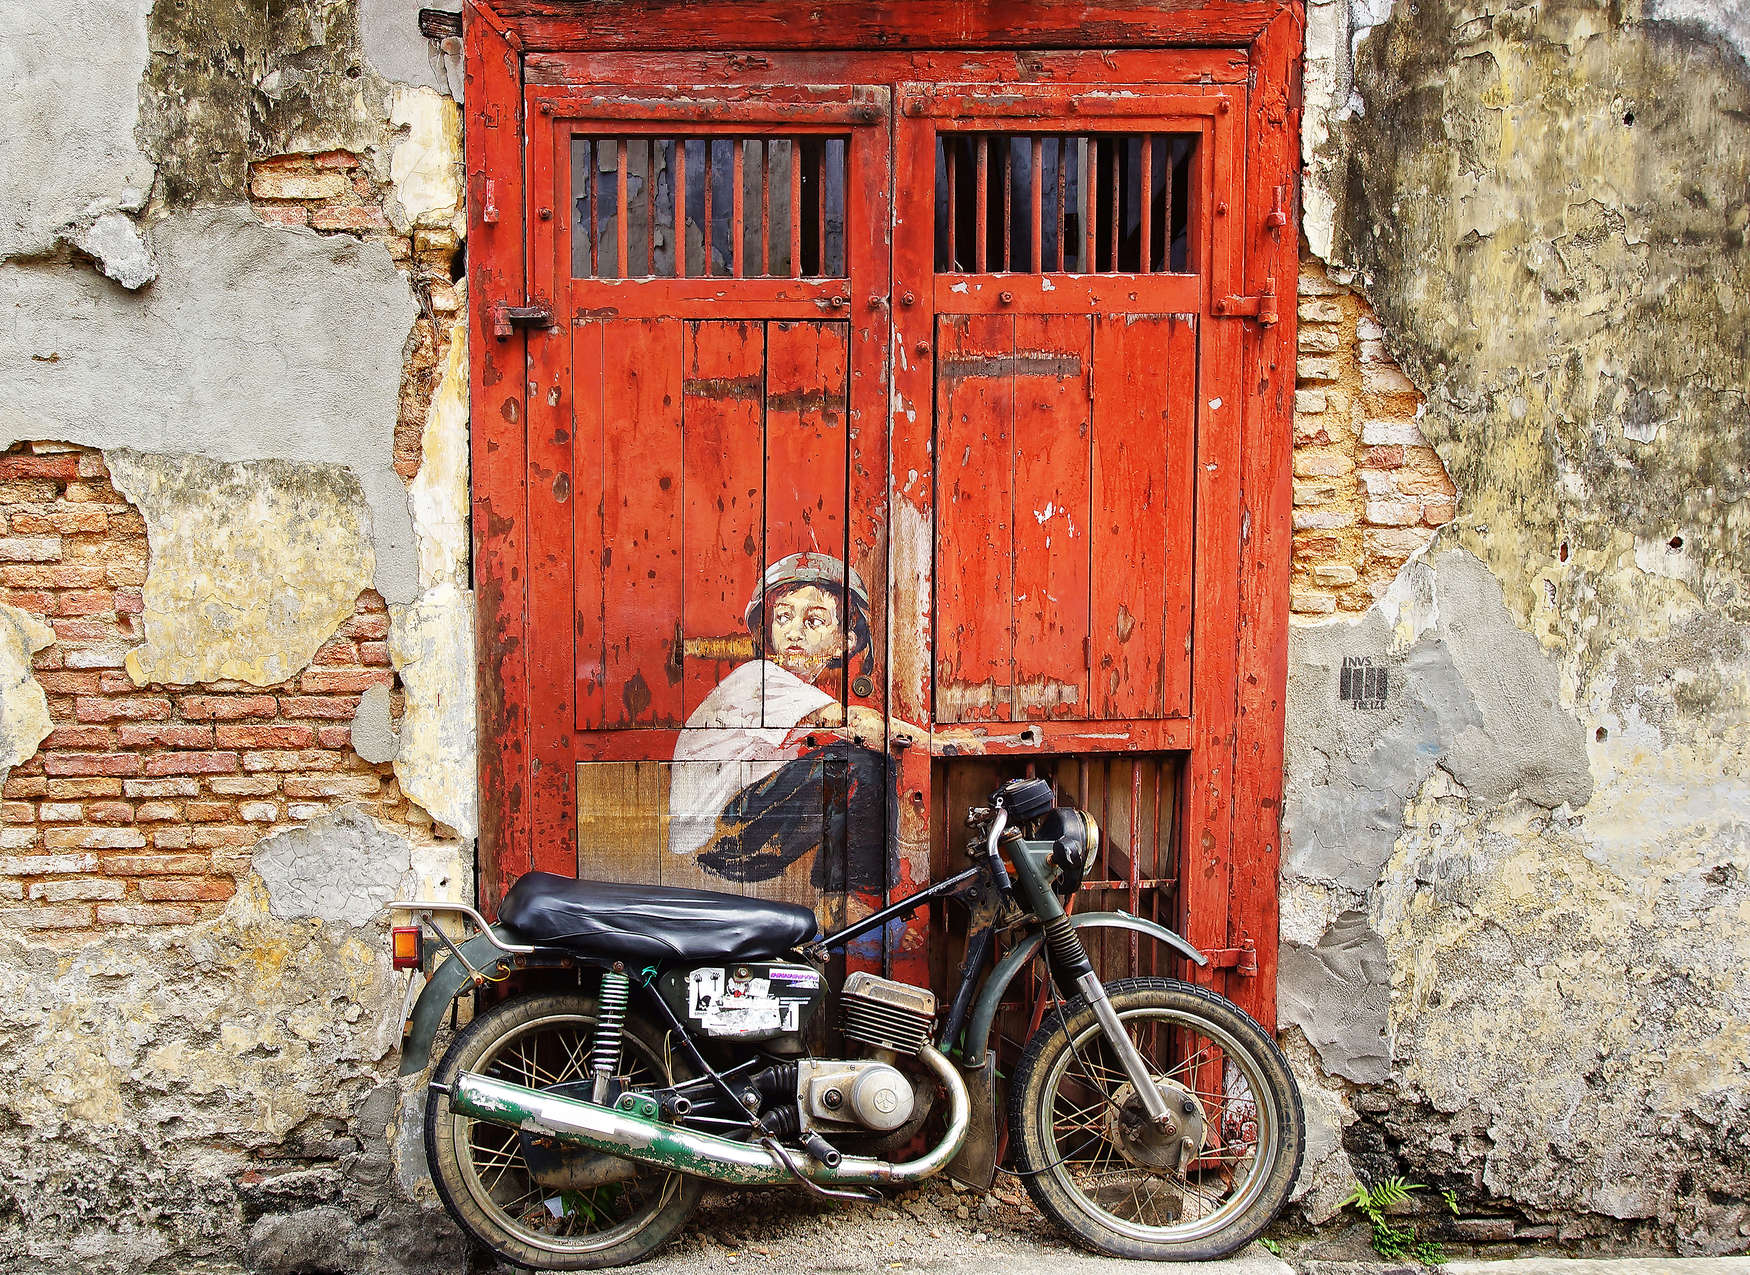             Fototapete Vintage Tür mit Mauer & Motorrad – Rot, Beige
        